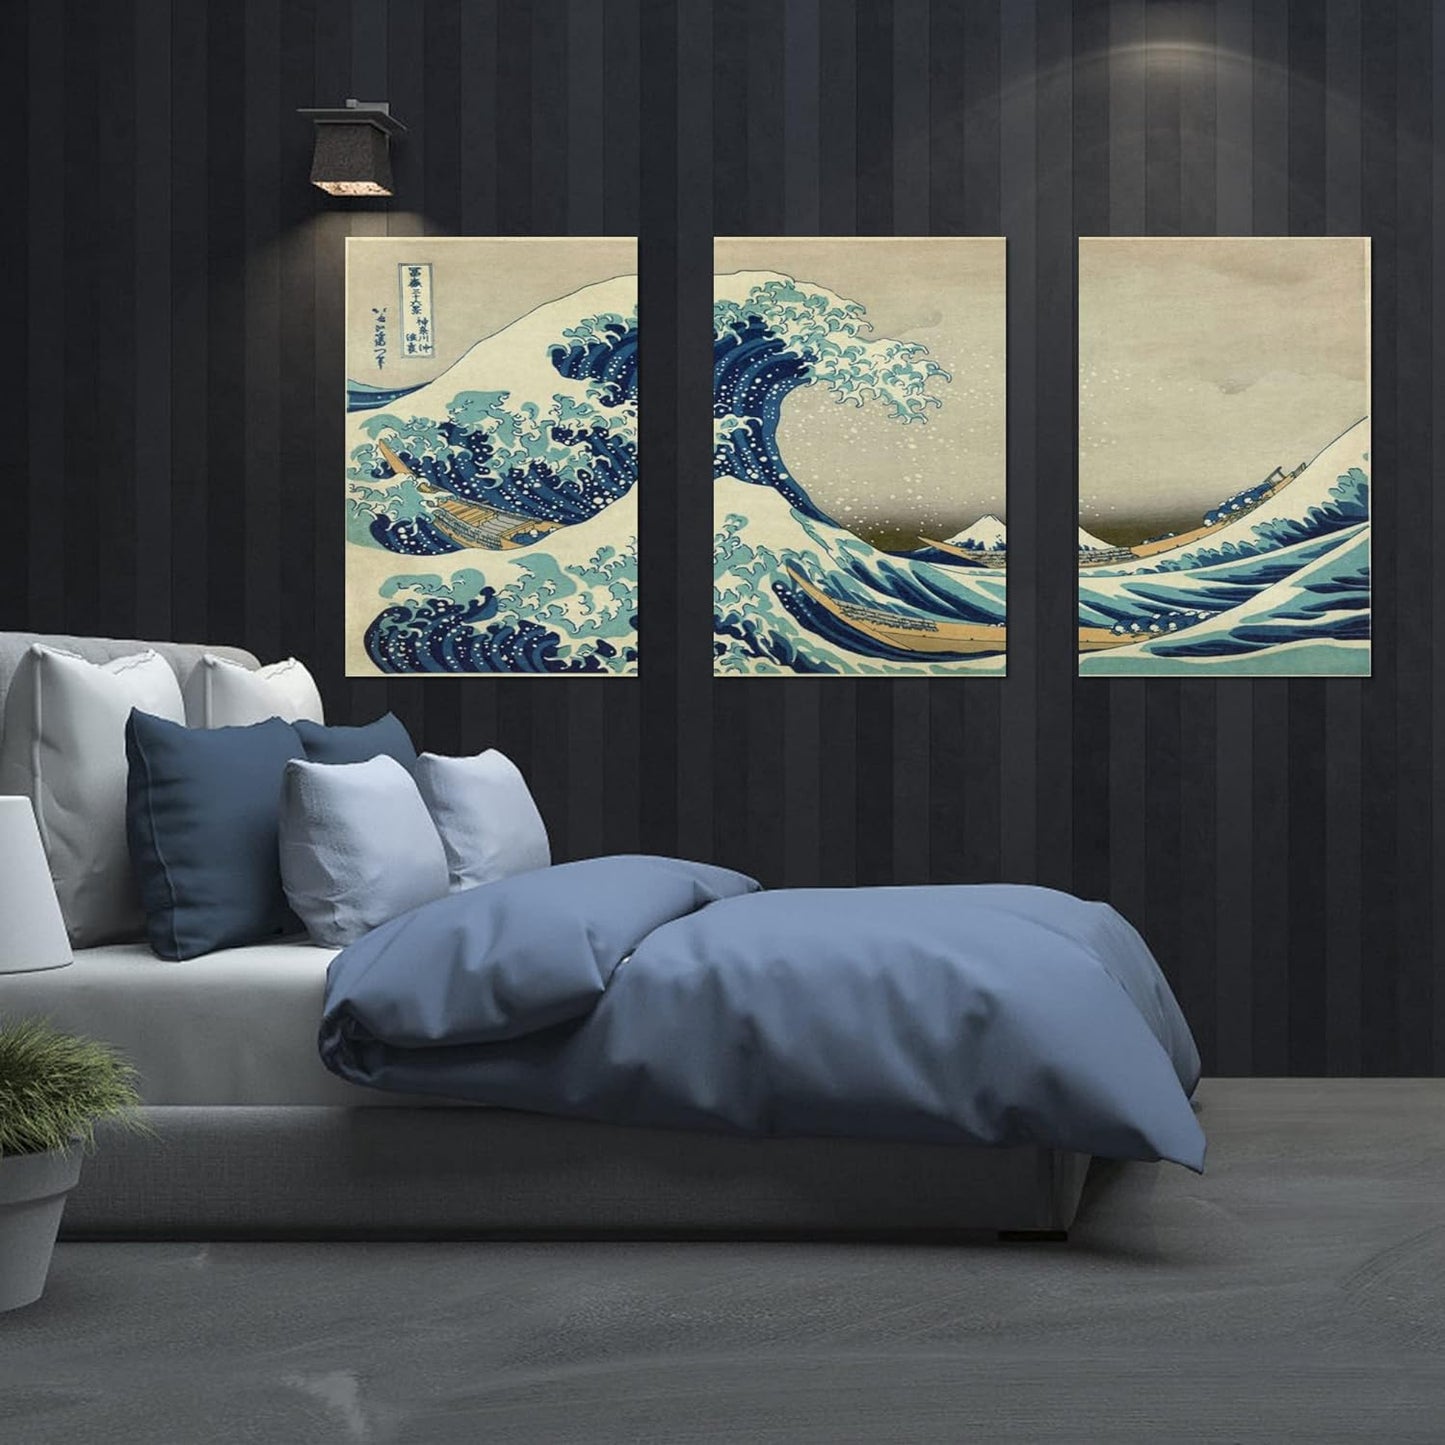 Brusheslife Seascape Wall Art: 3-Panel Japanese Kanagawa Wave